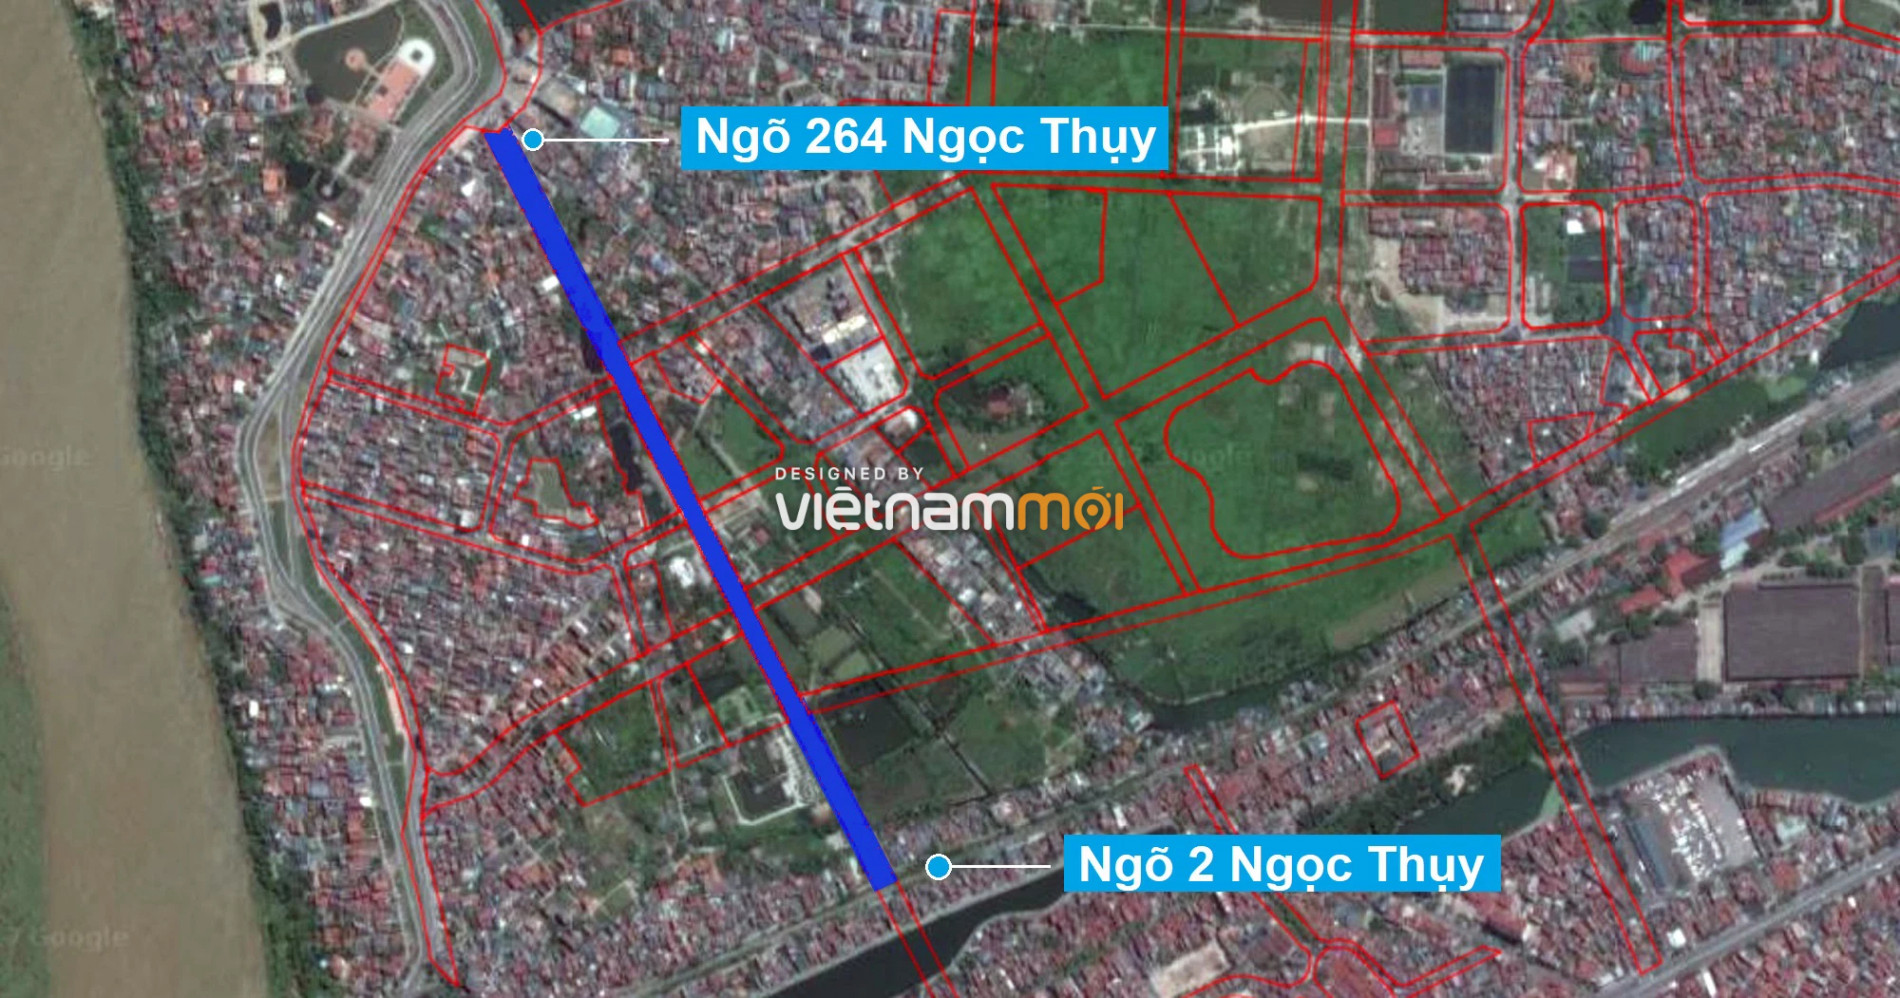 Những khu đất sắp thu hồi để mở đường ở phường Ngọc Thụy, Long Biên, Hà Nội (phần 4) - Ảnh 2.